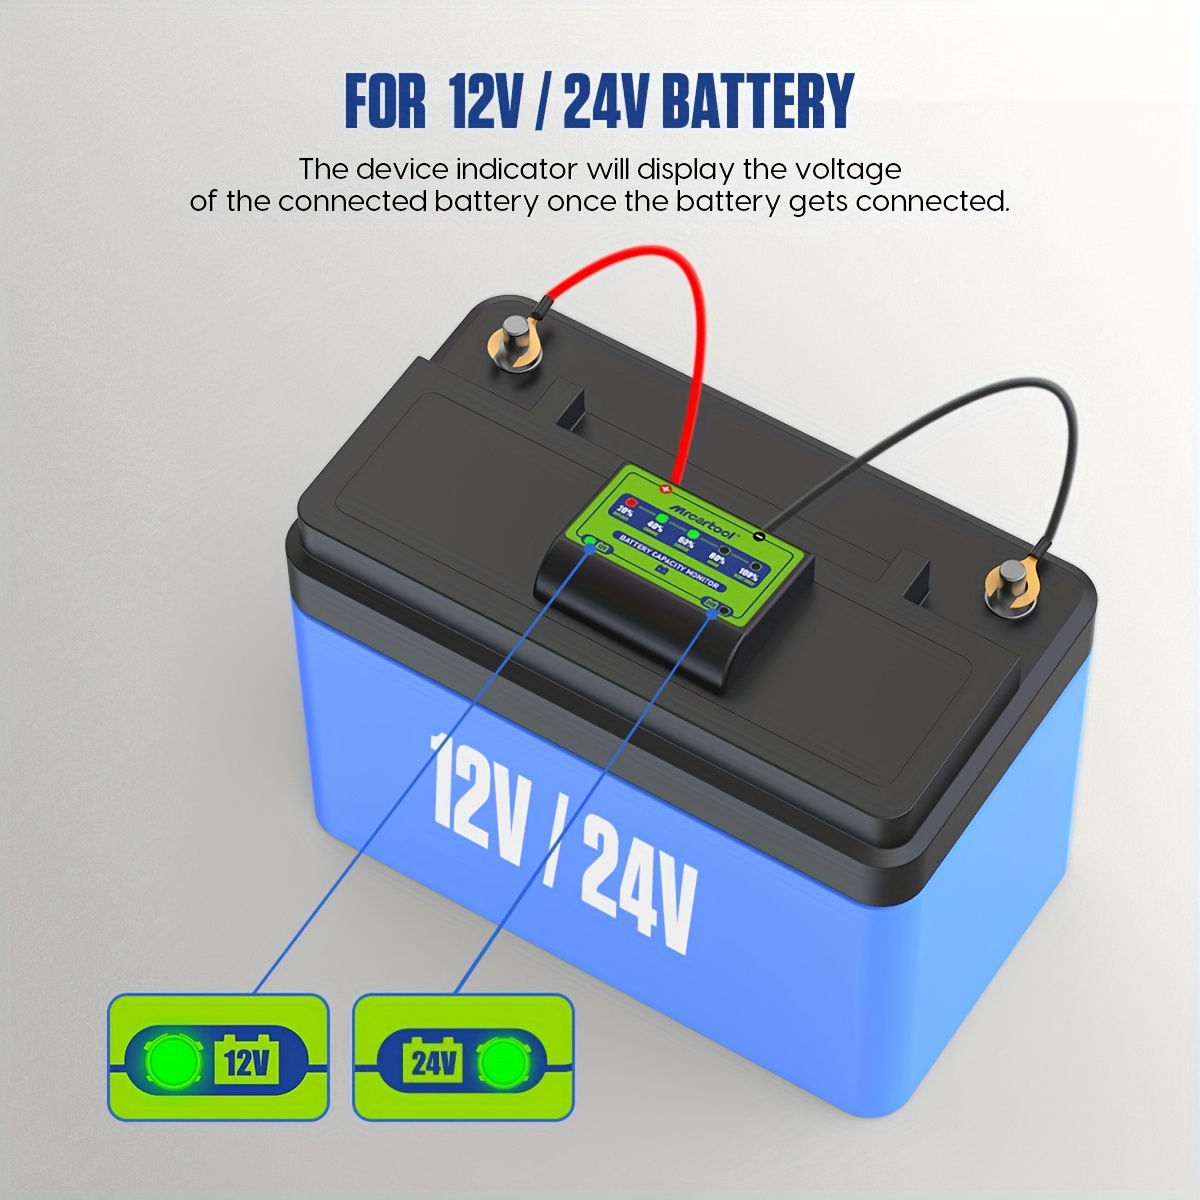 Moniteur de batterie auto connecté pour batteries 12 V